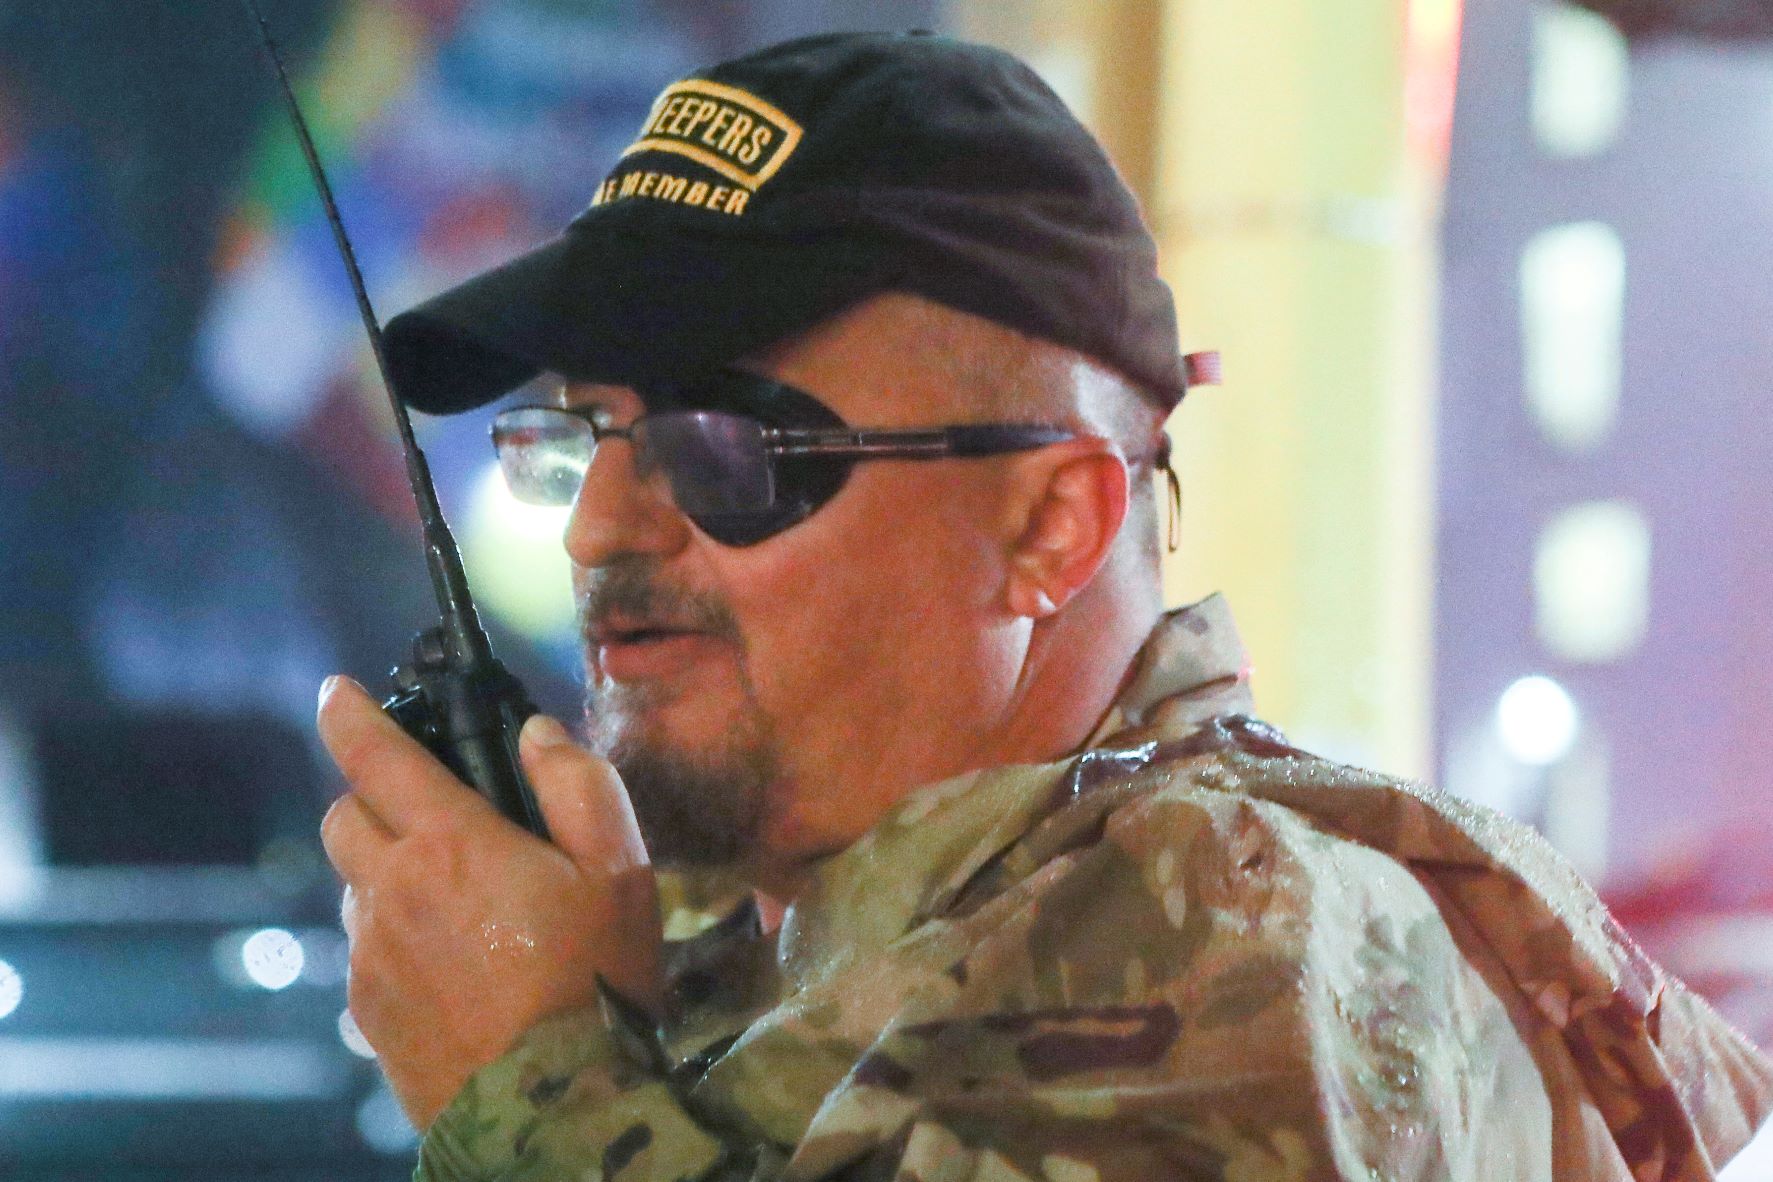 ستيوارت رودس، مؤسس ميليشيا "أوث كيبرز" يستخدم الراديو أثناء مغادرته تجمعاً عقده الرئيس دونالد ترمب في مدينة "مينابوليس" بولاية "مينسوتا" في 10 أكتوبر 2019 